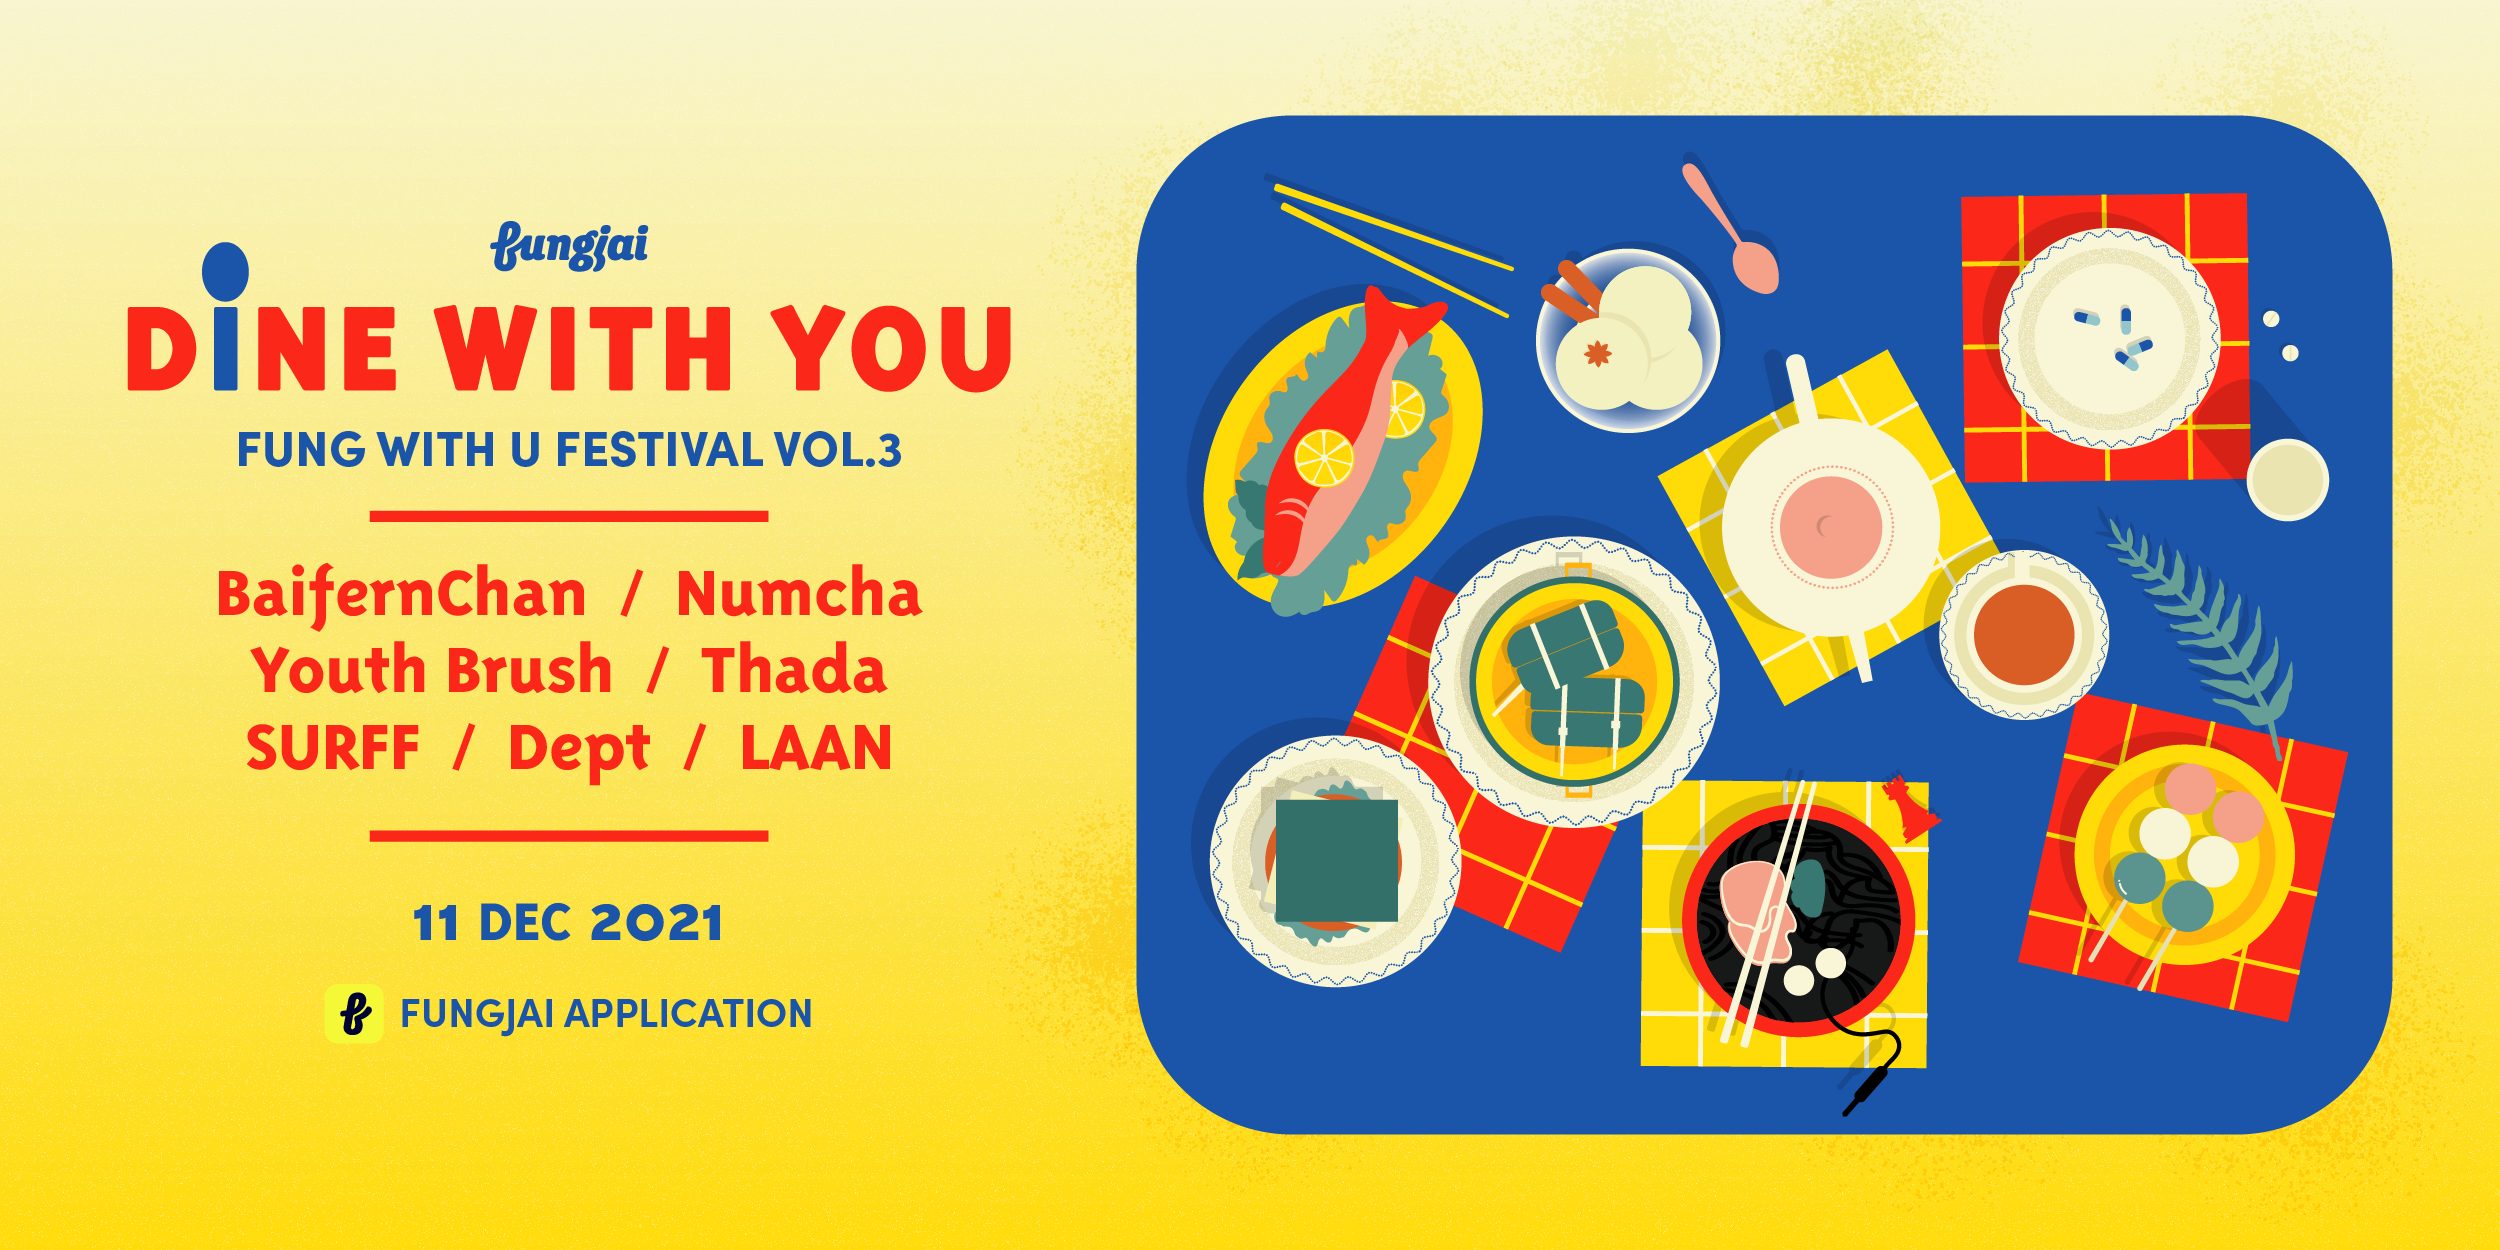 Fung With U Festival Vol.3 - Dine With You เสิร์ฟคอนเสิร์ตเสียงออนไลน์ส่งท้ายปี